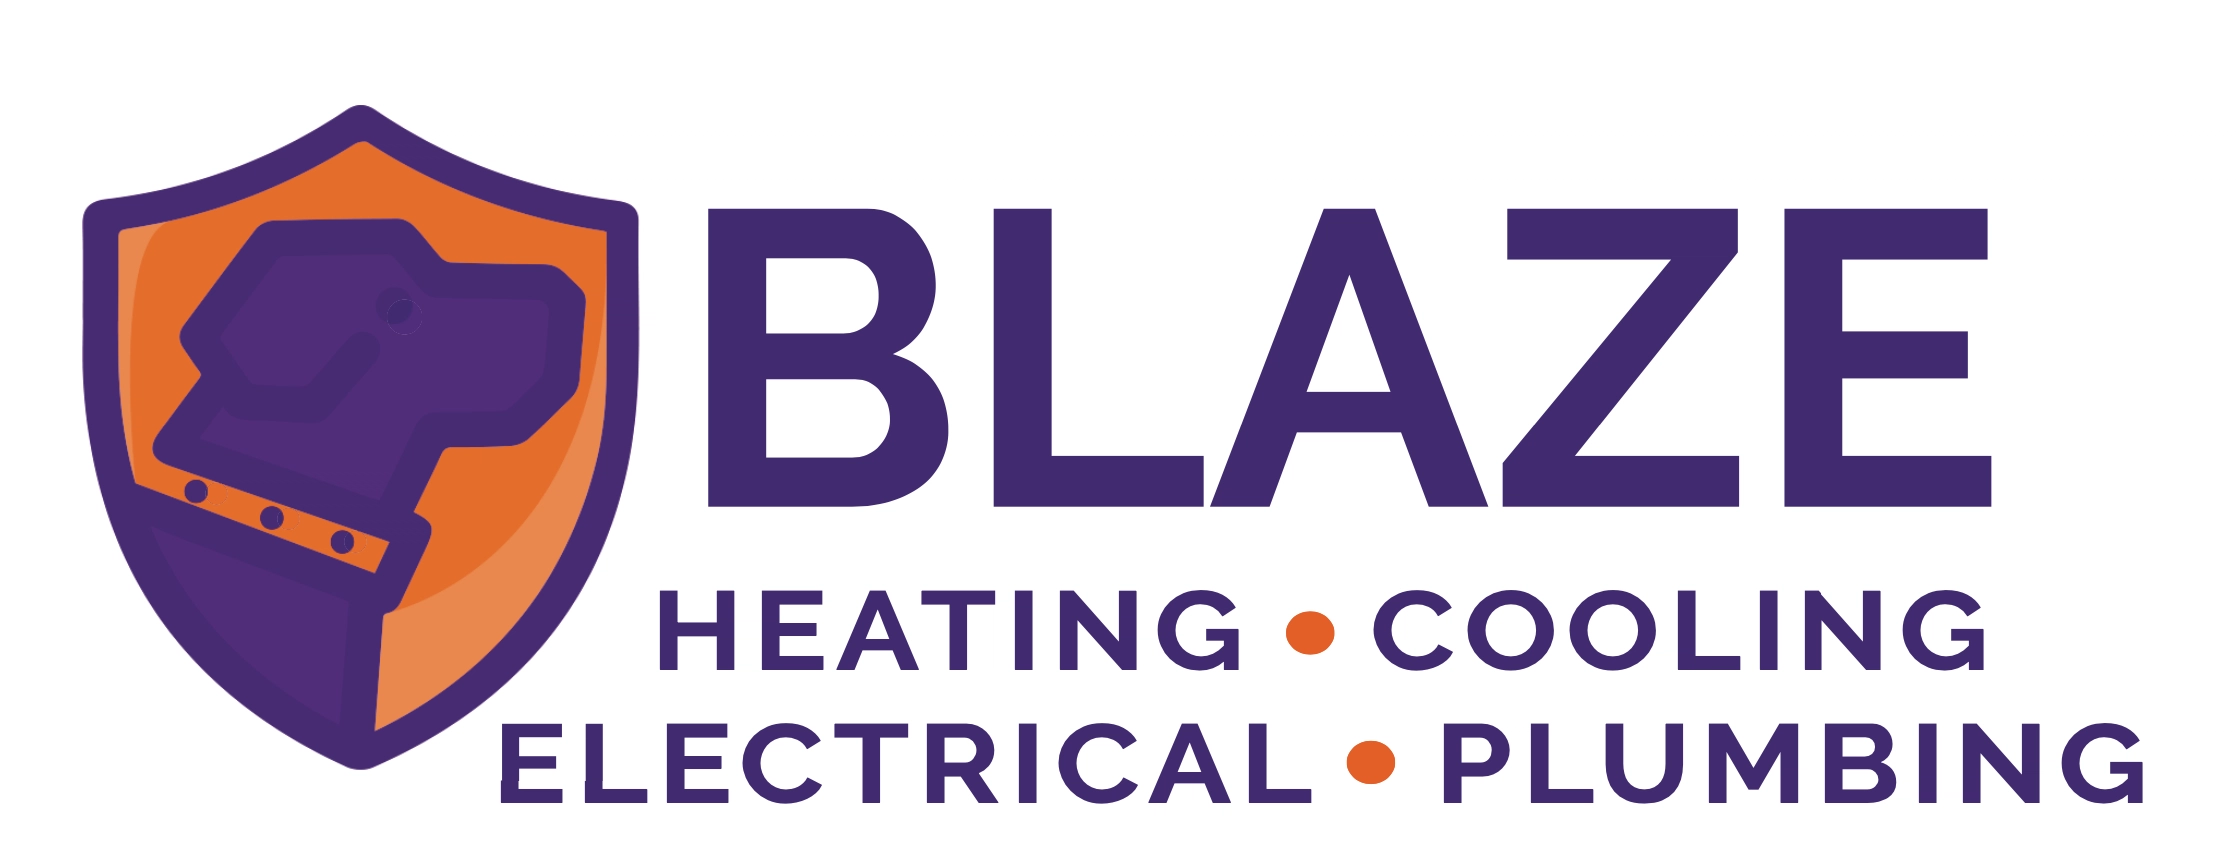 Air Treatment Inc. Heating & Air Conditioning Logo